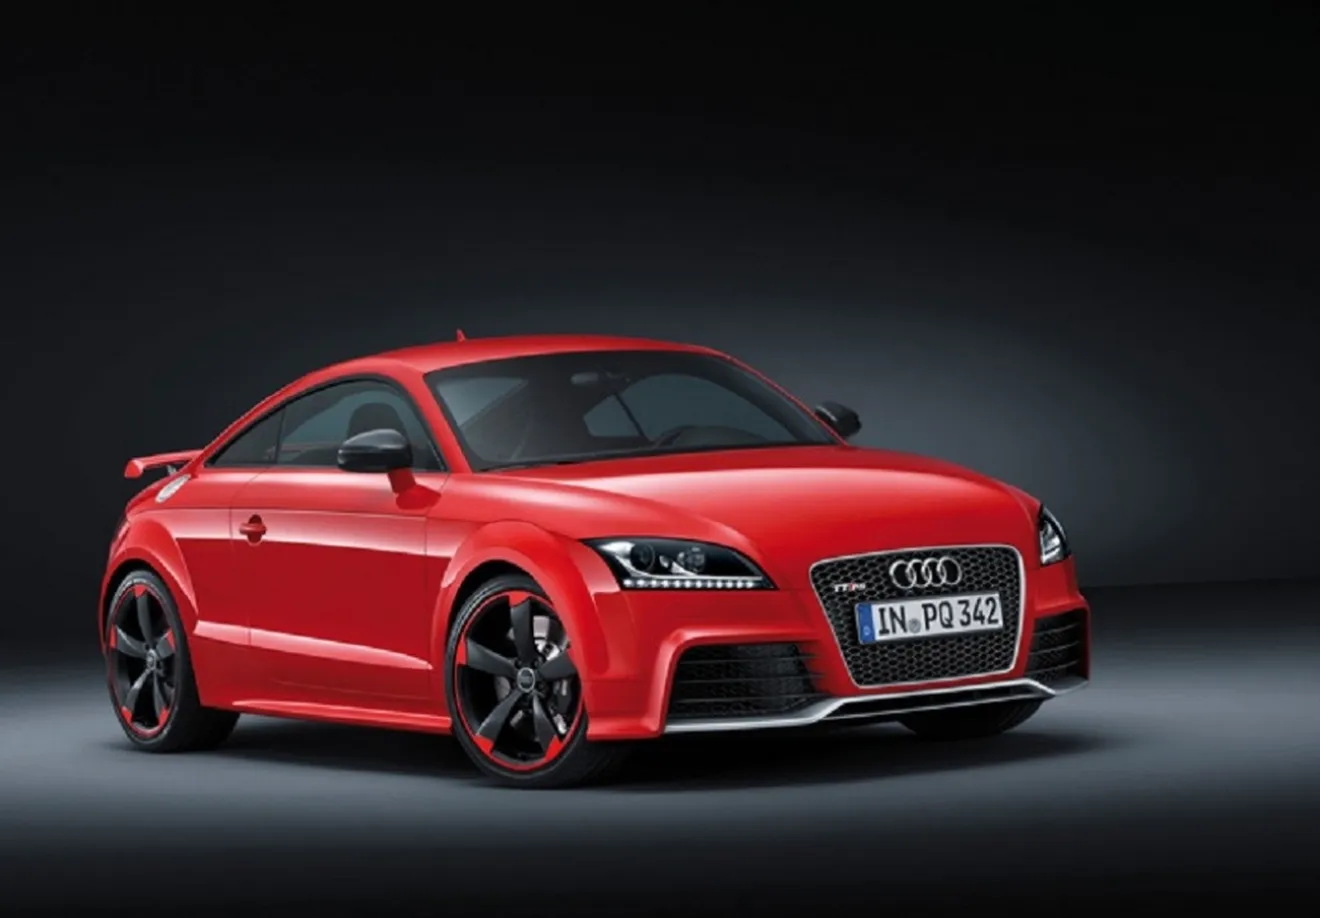 Análisis técnico: Audi TT RS Plus